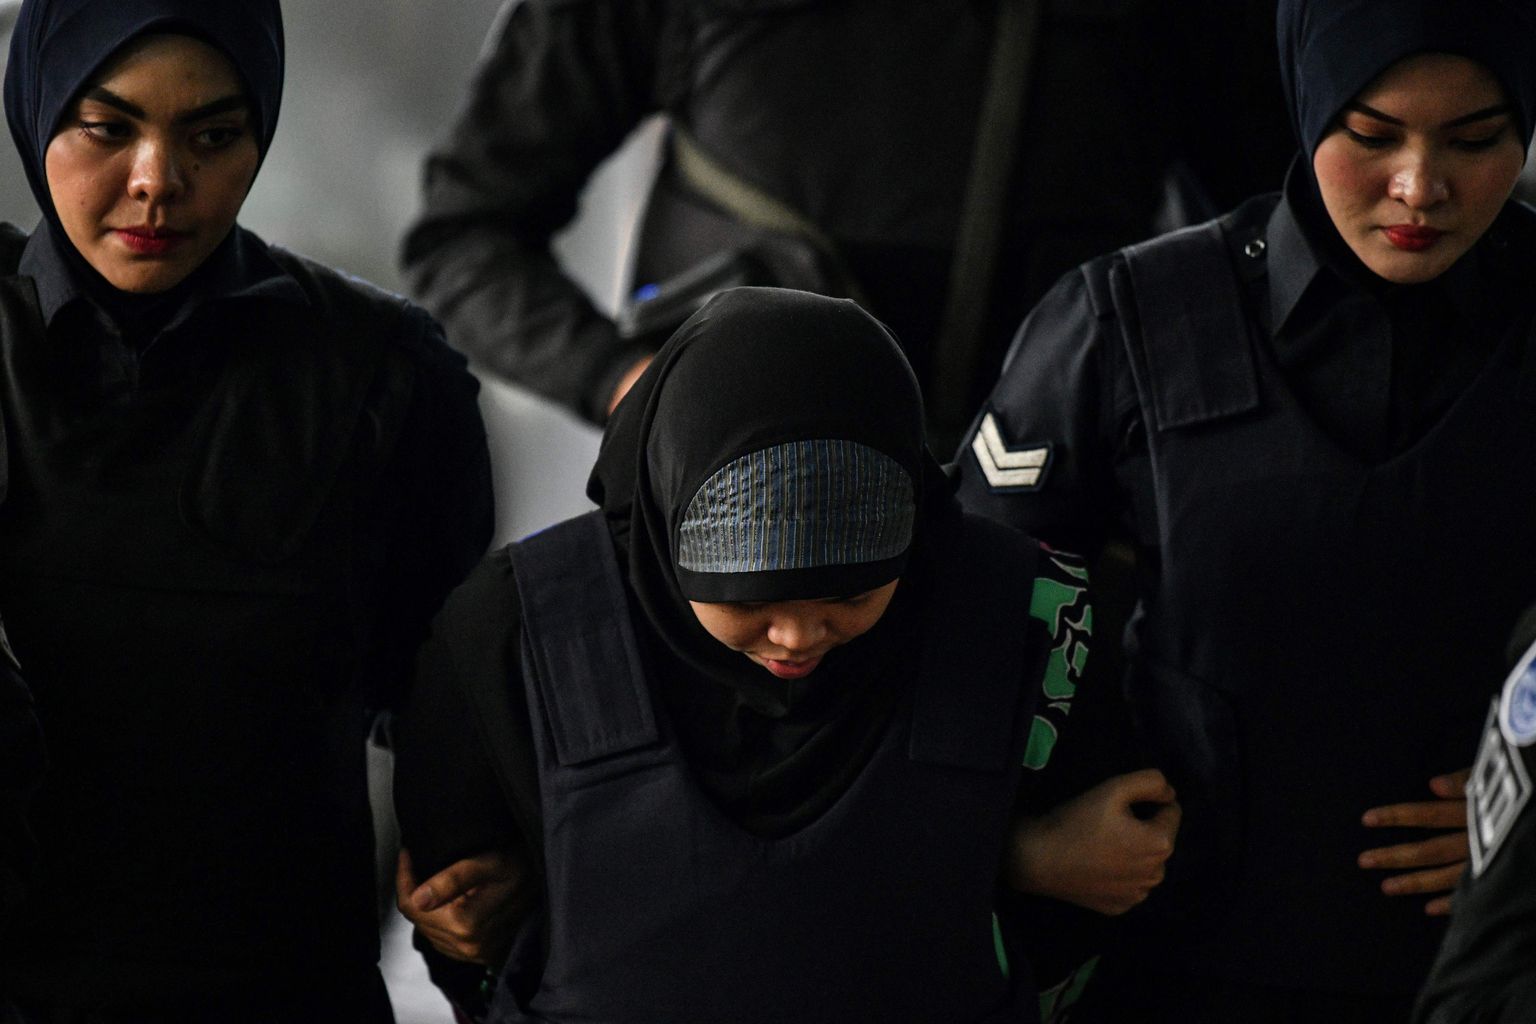 Malaisia politsei viib Siti Aisyahi järjekordsele kohtukuulamisele.